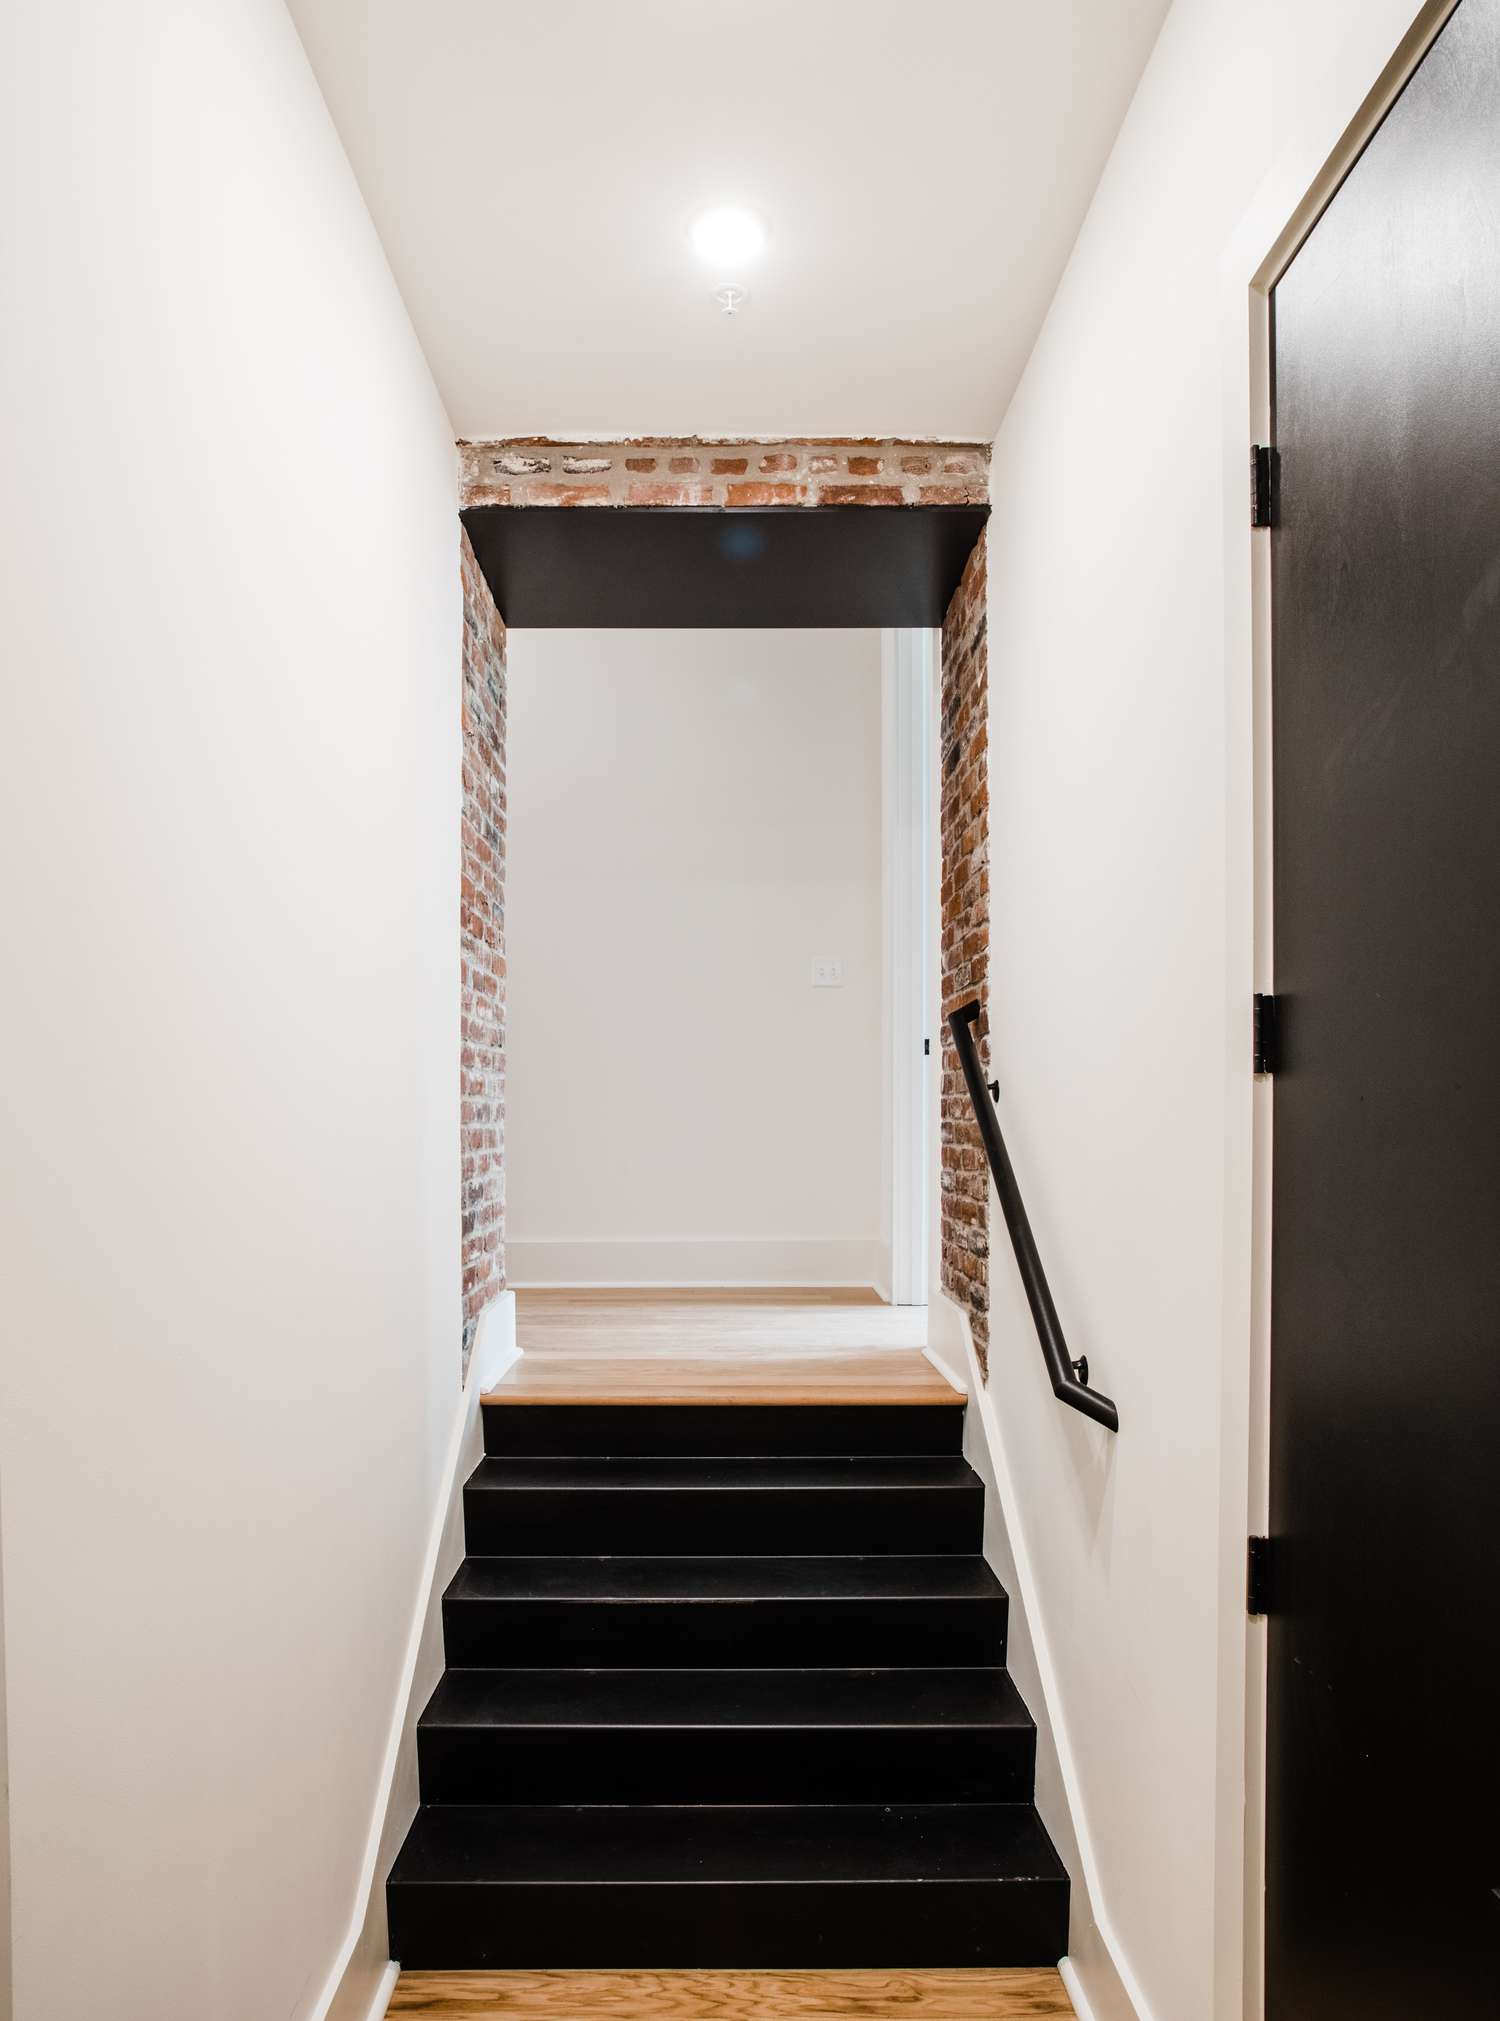 Escaleras de acero negro con ladrillo visto y paredes blancas.